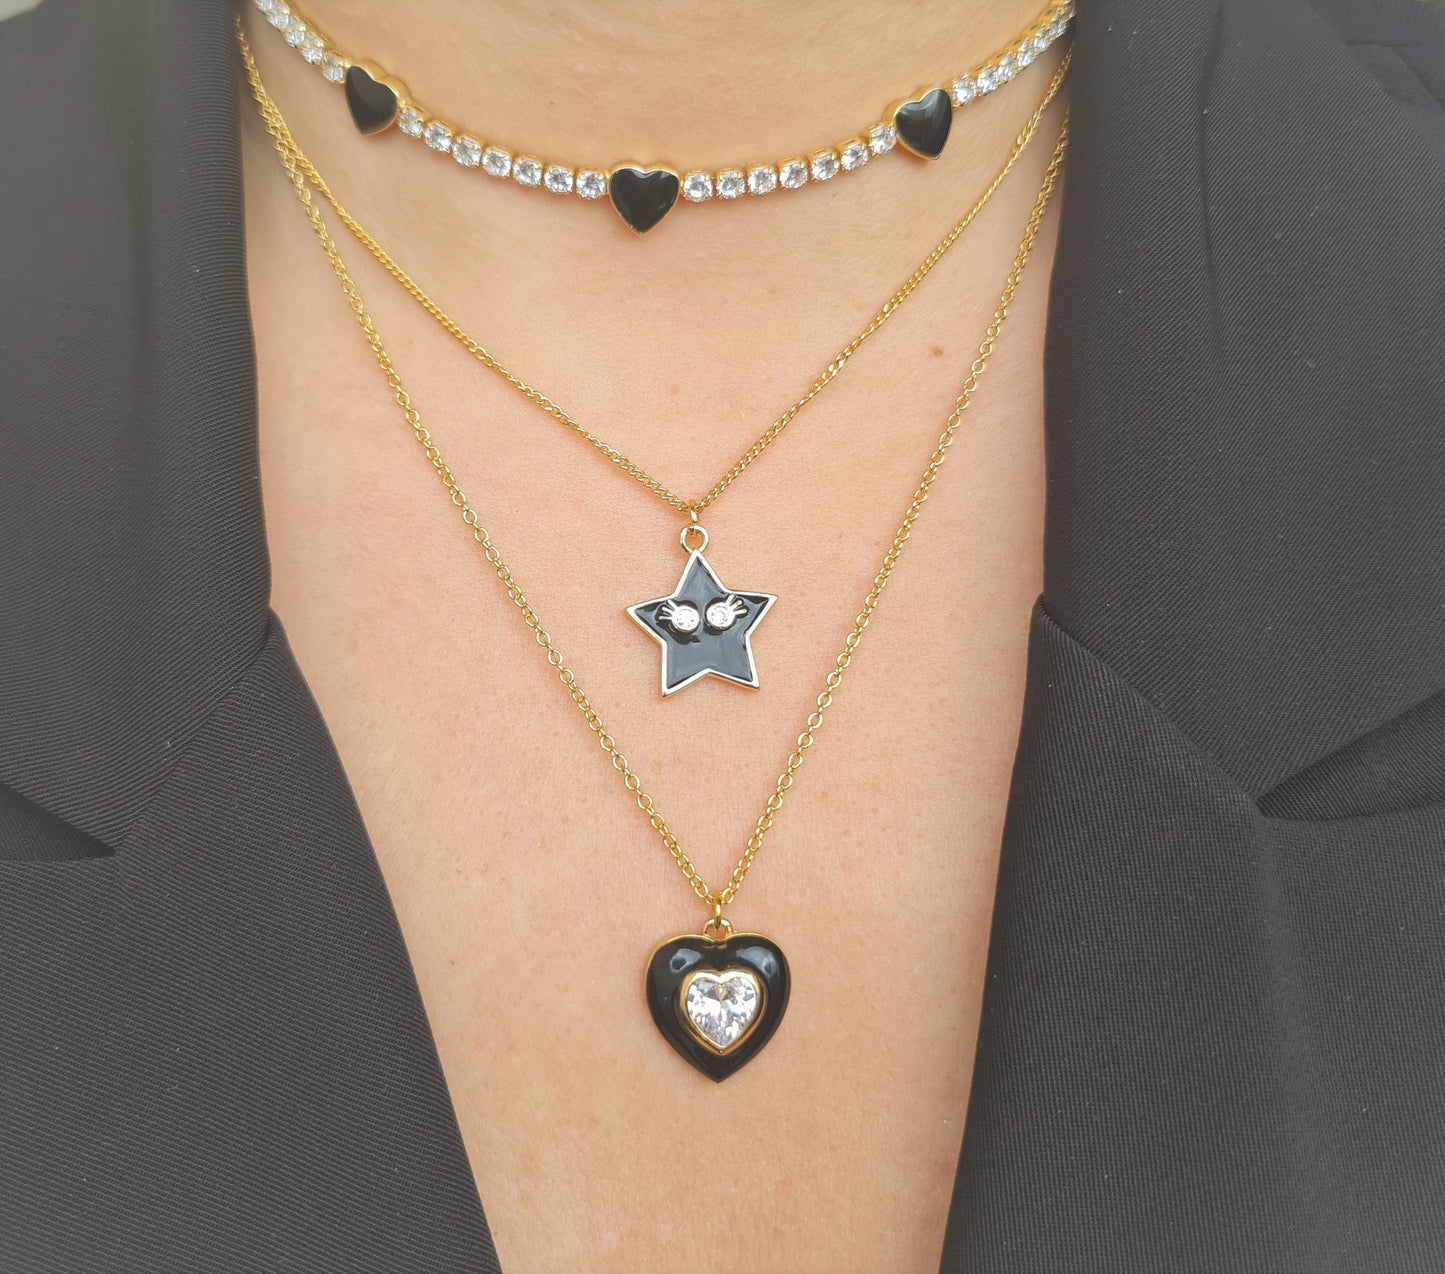 MiniLux "Black Heart" necklace